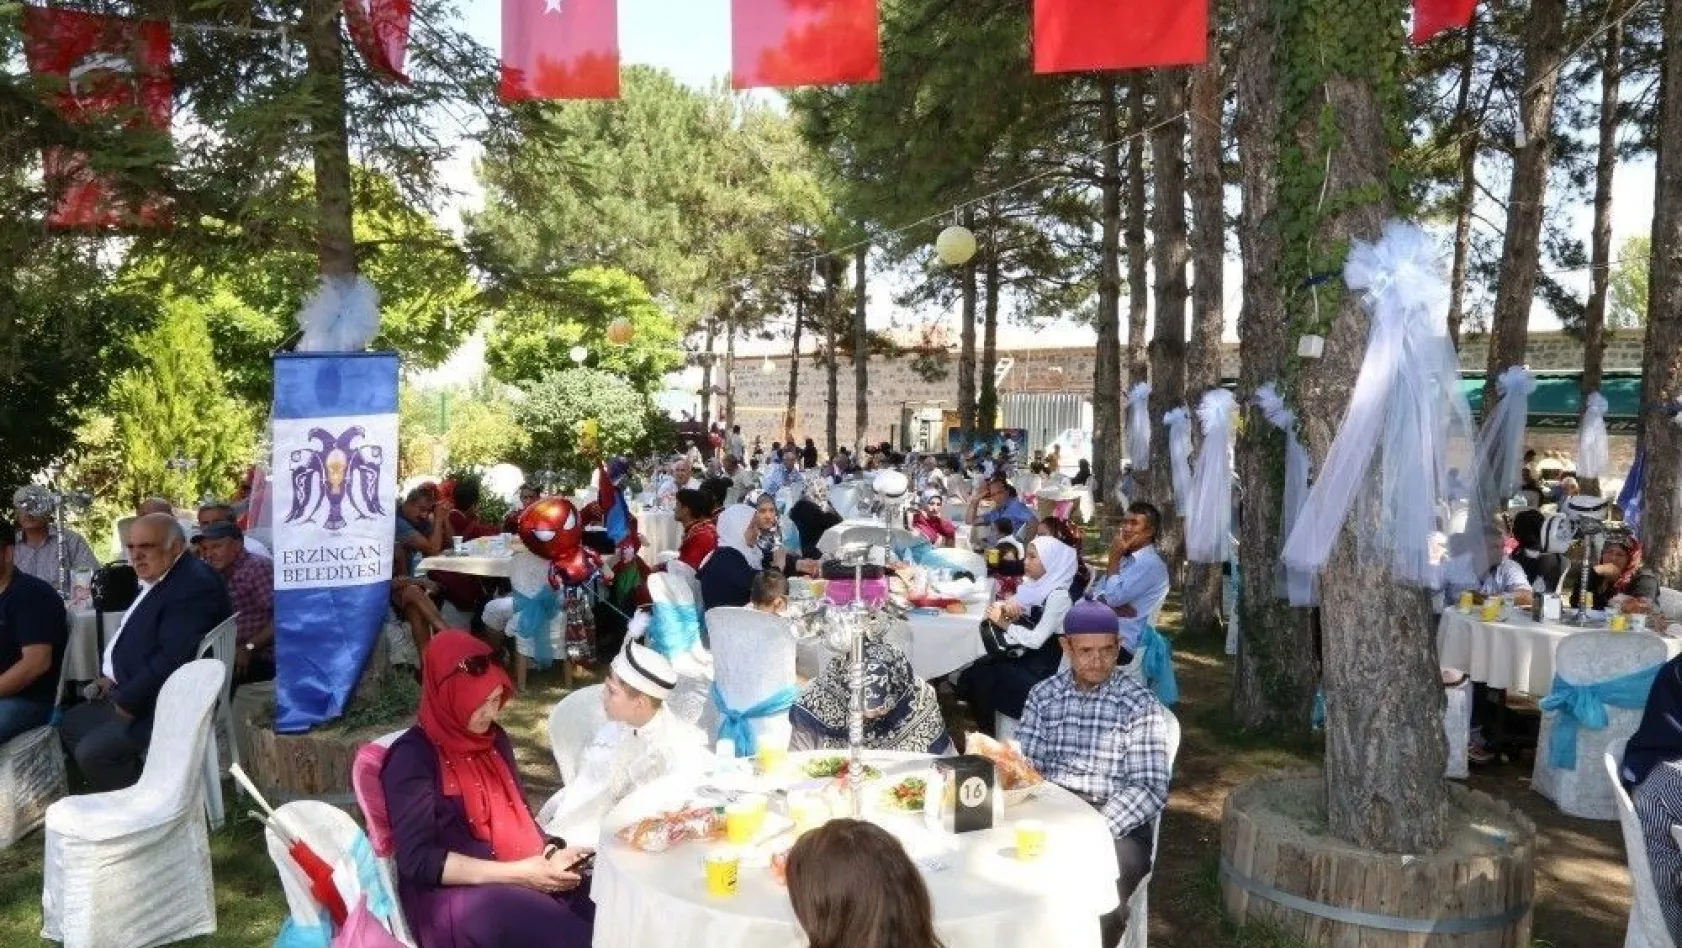 Erzincan Belediyesi 100 Çocuğa Sünnet Şöleni düzenledi
